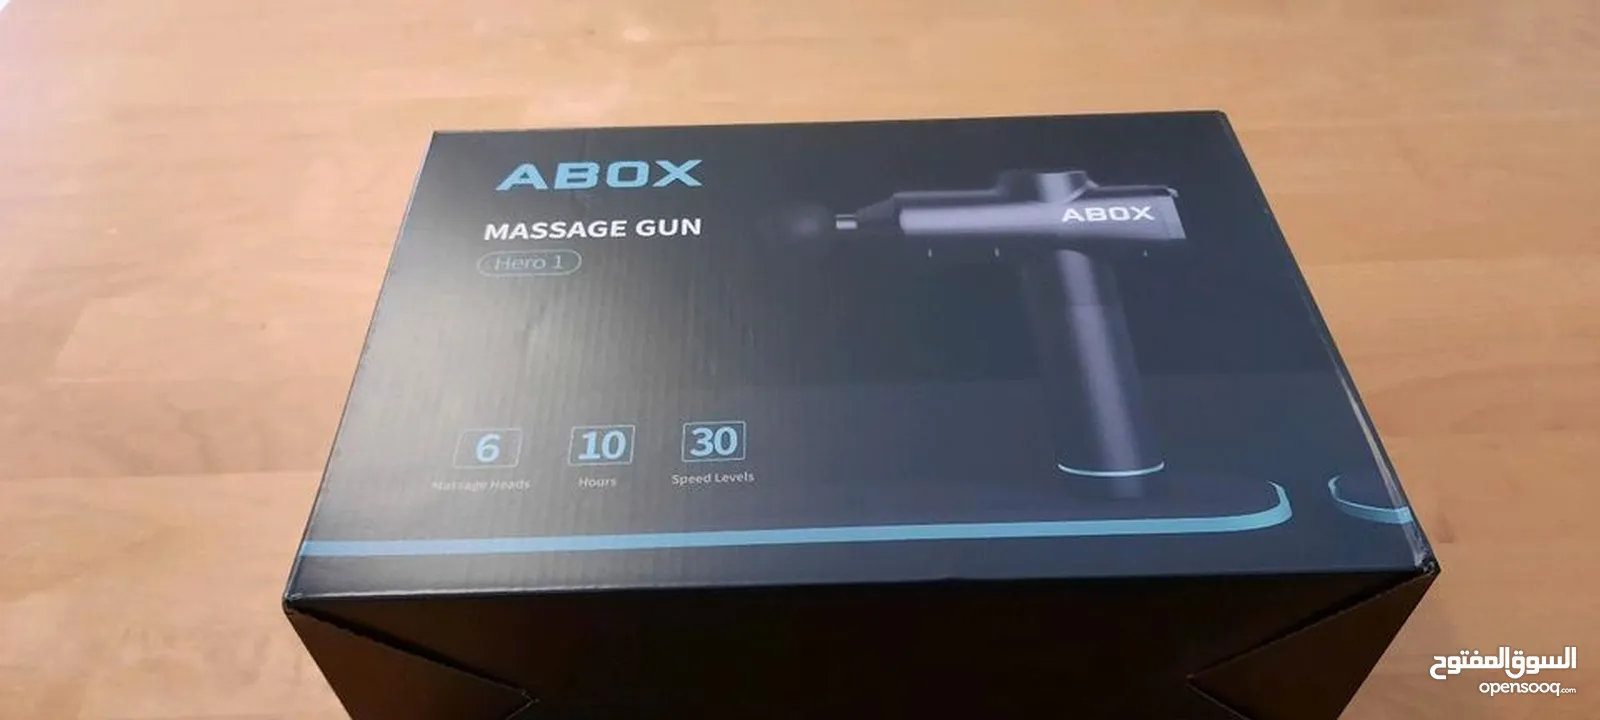 مسدس تدليك الاصلي من شركة ABOX